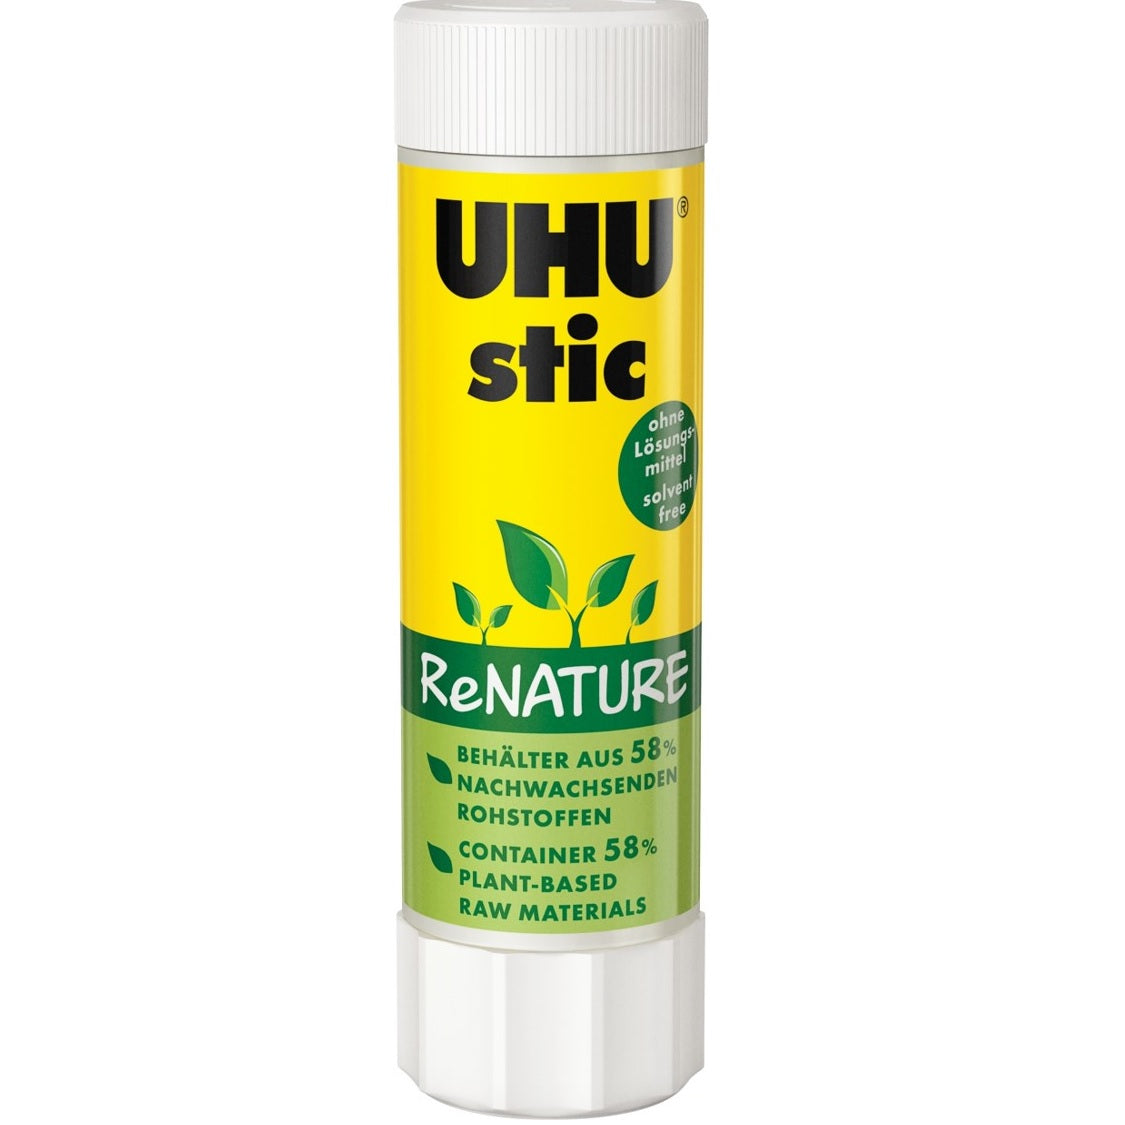 Glue Stick UHU Renature 40g